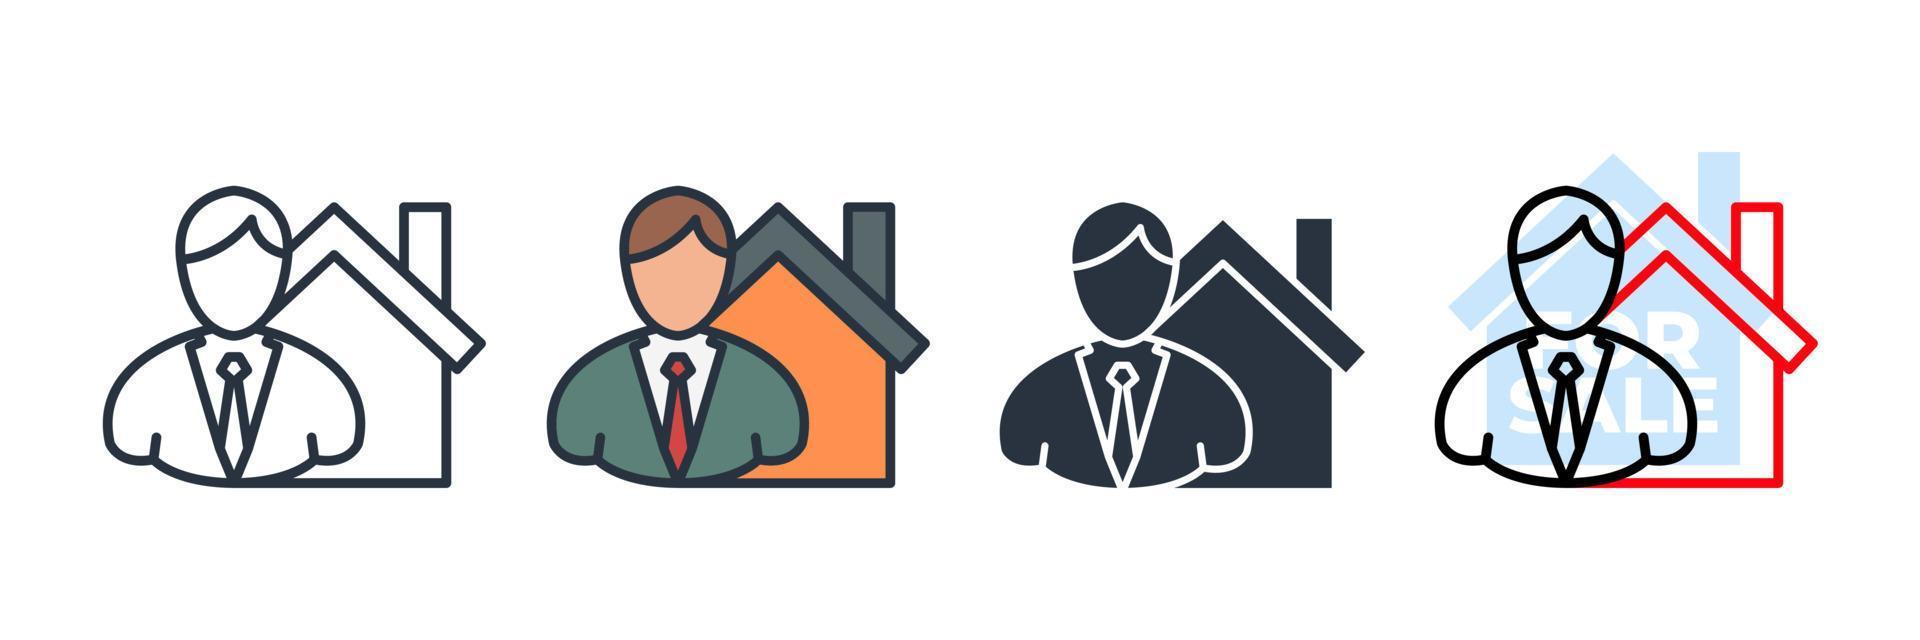 illustration vectorielle du logo de l'icône de l'agent immobilier. modèle de symbole d'homme d'affaires et de maison pour la collection de conception graphique et web vecteur